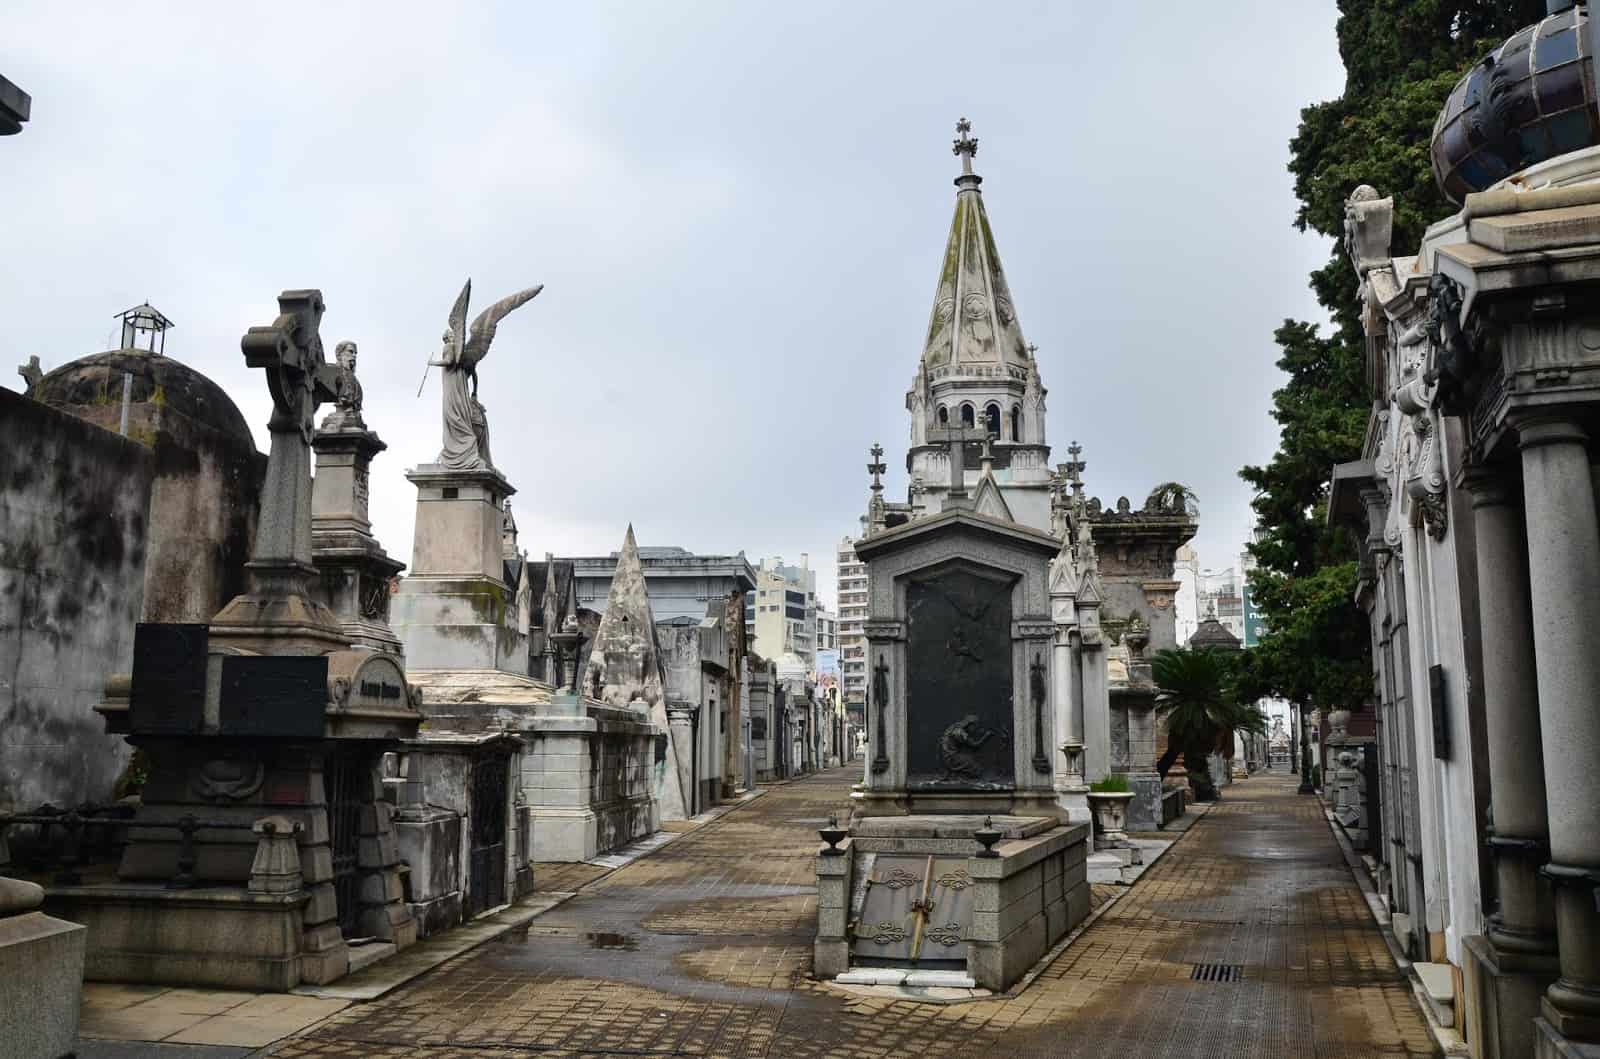 Cementerio de la Recoleta in Buenos Aires, Argentina